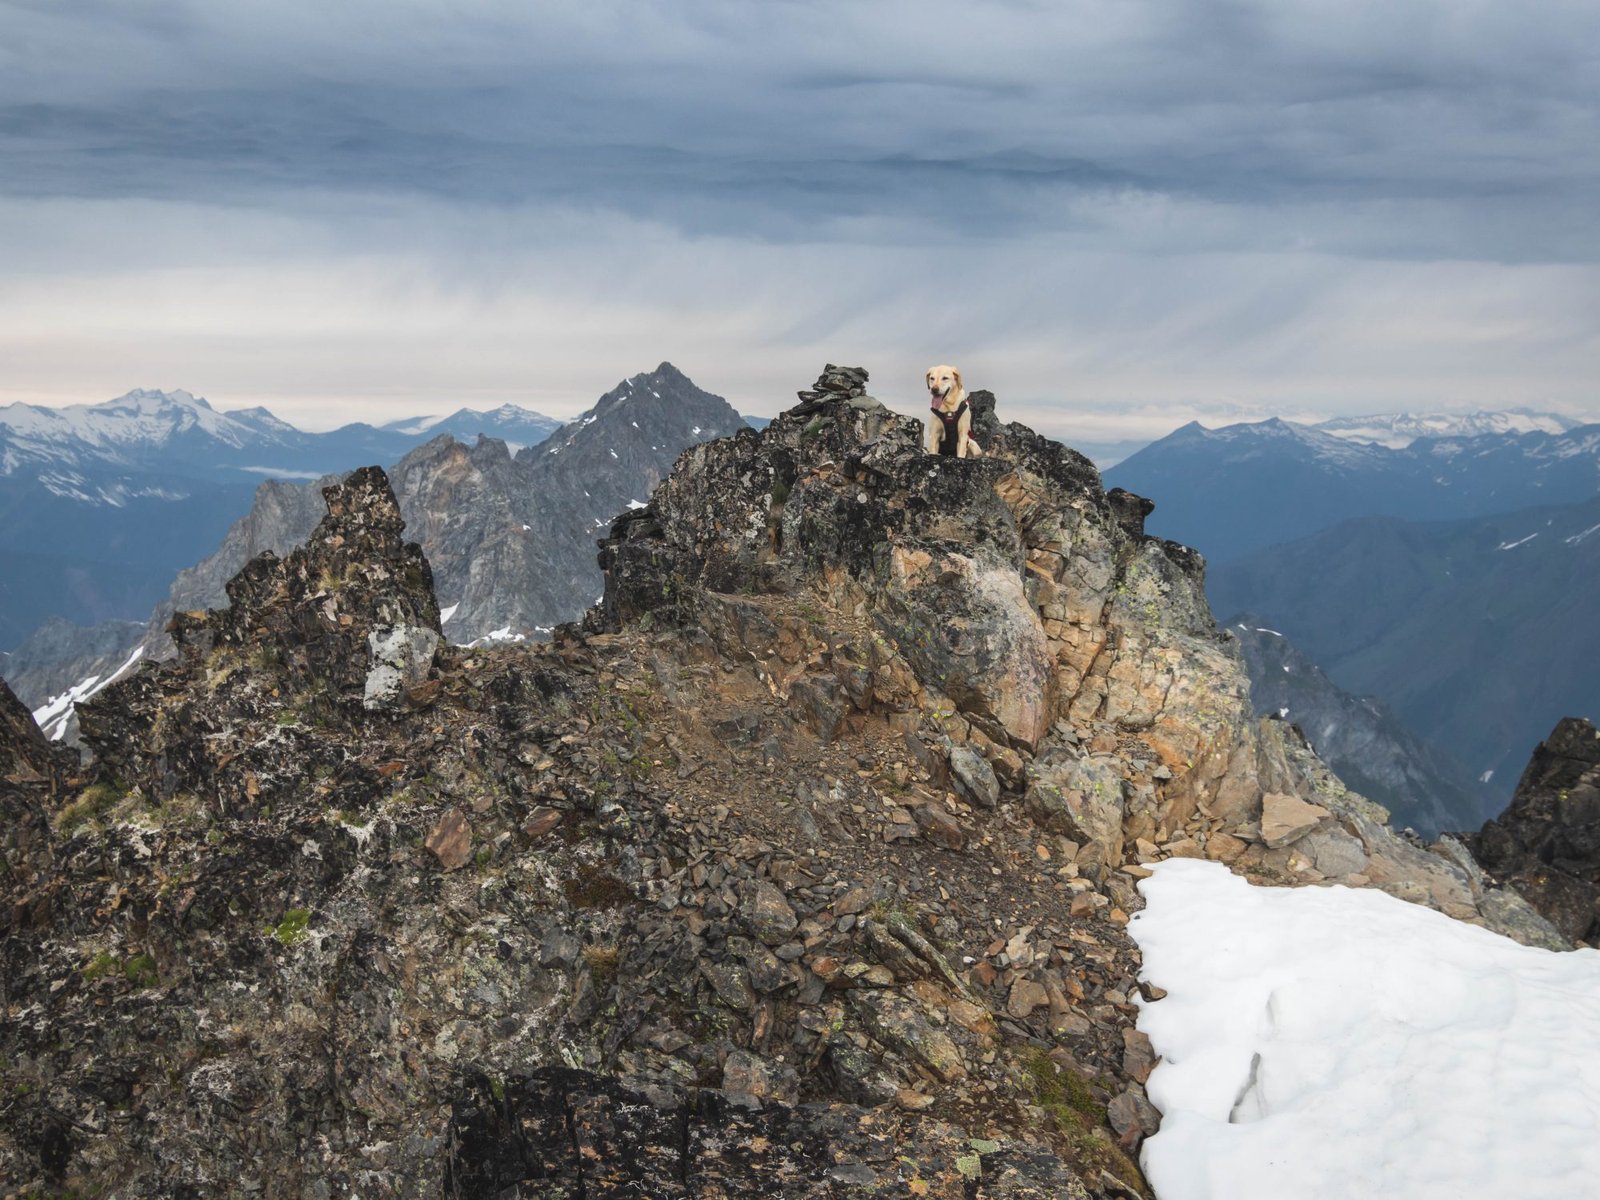 Summit dogs on Spider Mountain